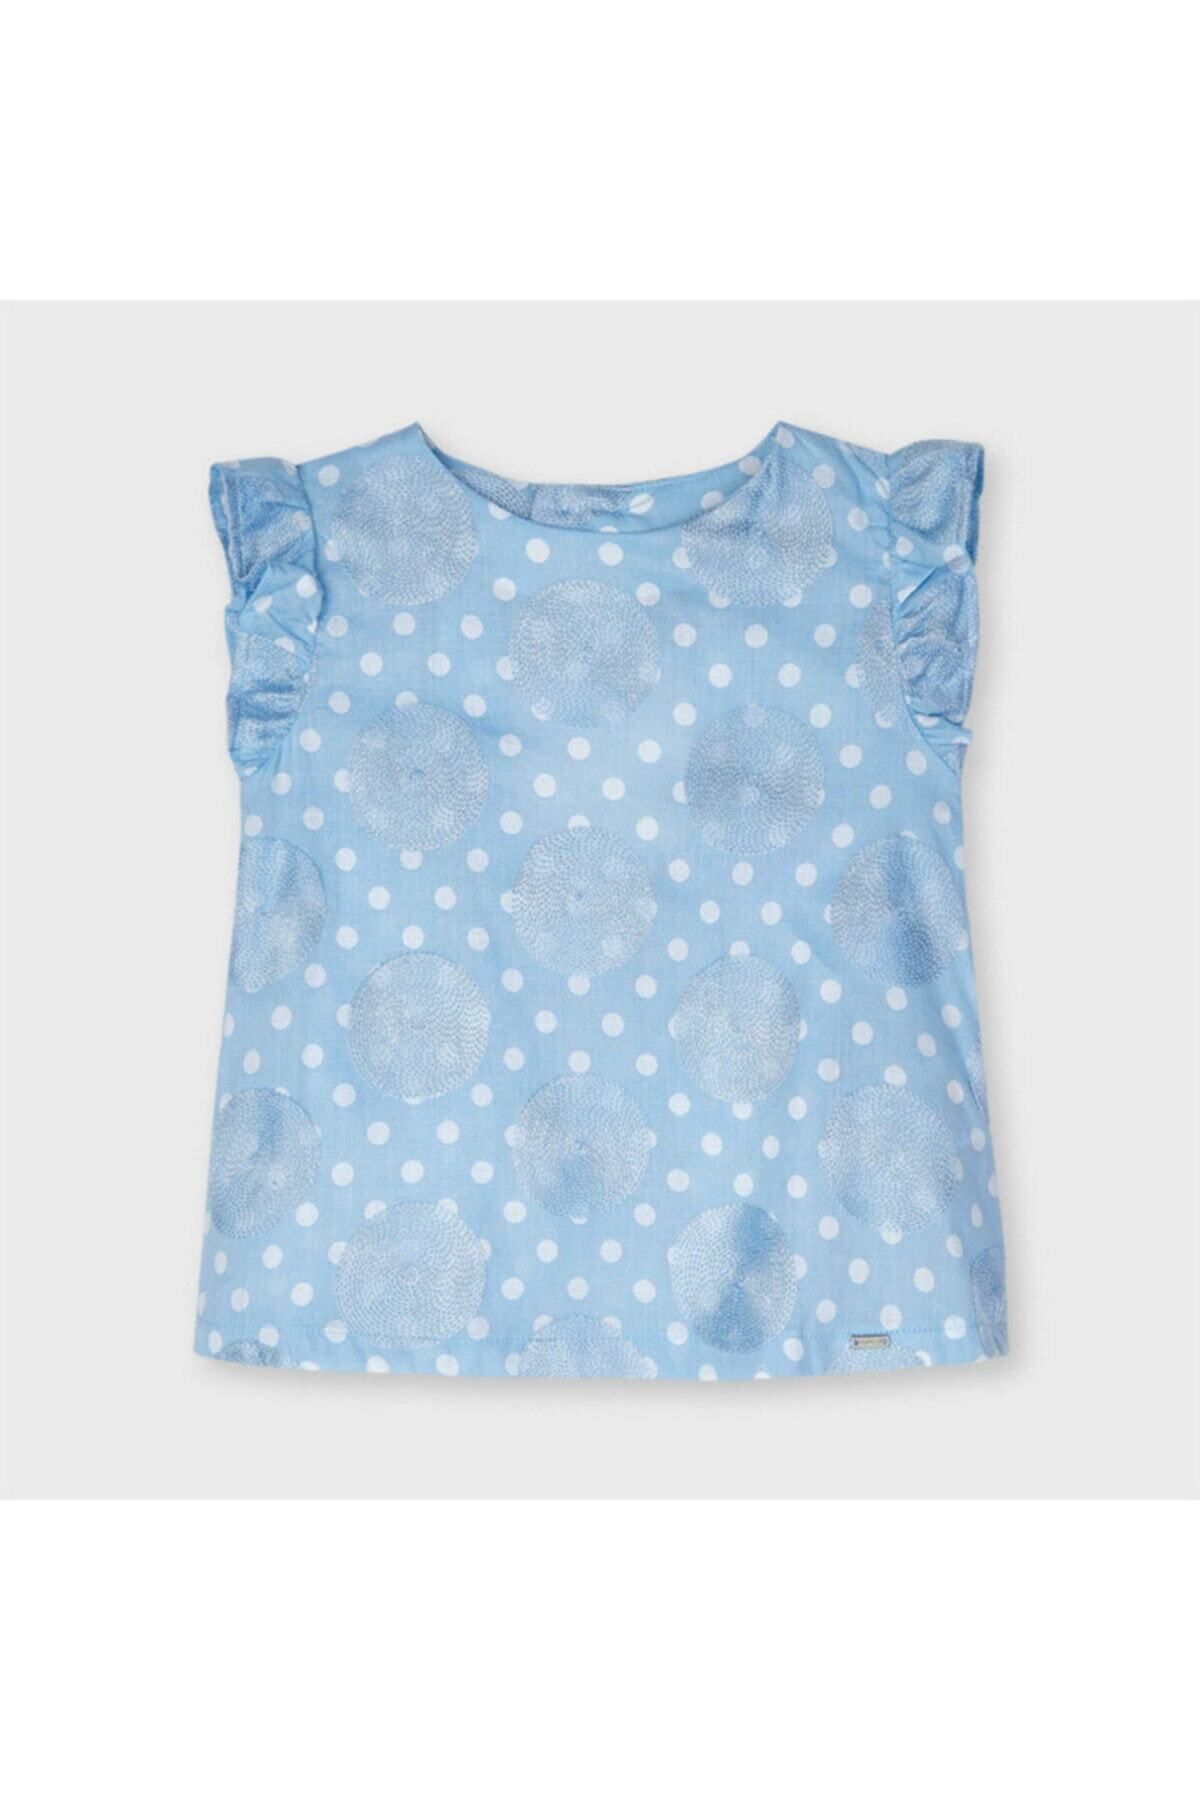 Mayoral Kız Çocuk Puantiyeli Keten Bluz 3188 Mavi